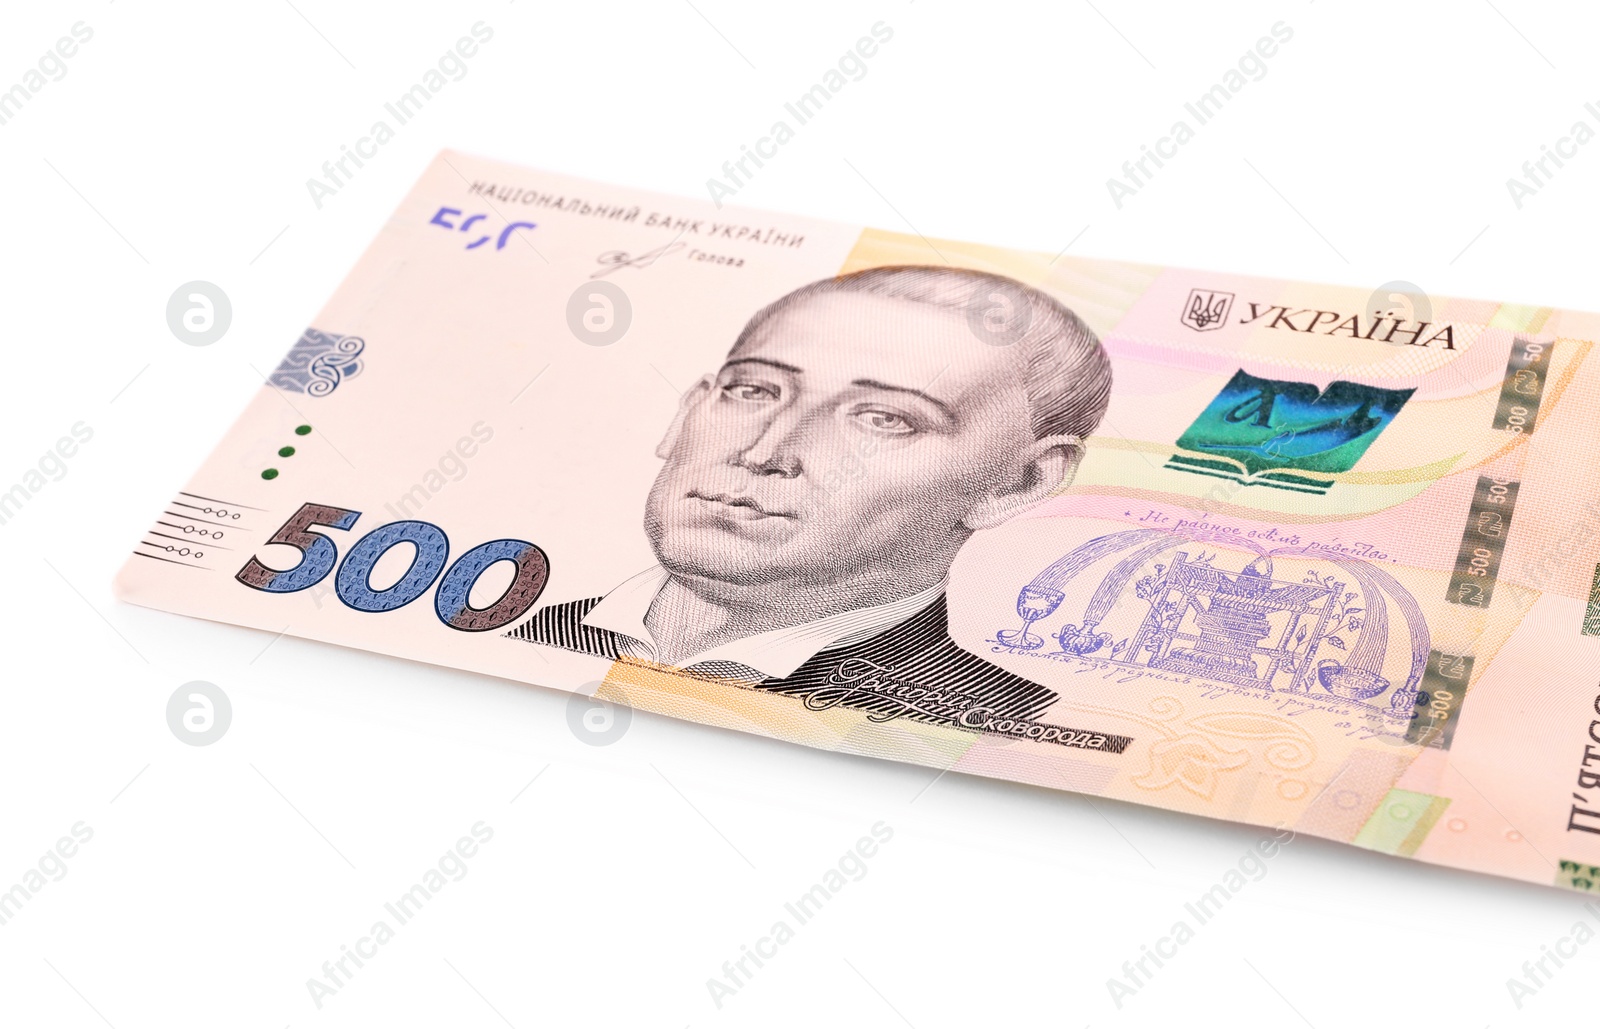 Photo of 500 Ukrainian Hryvnia banknote on white background